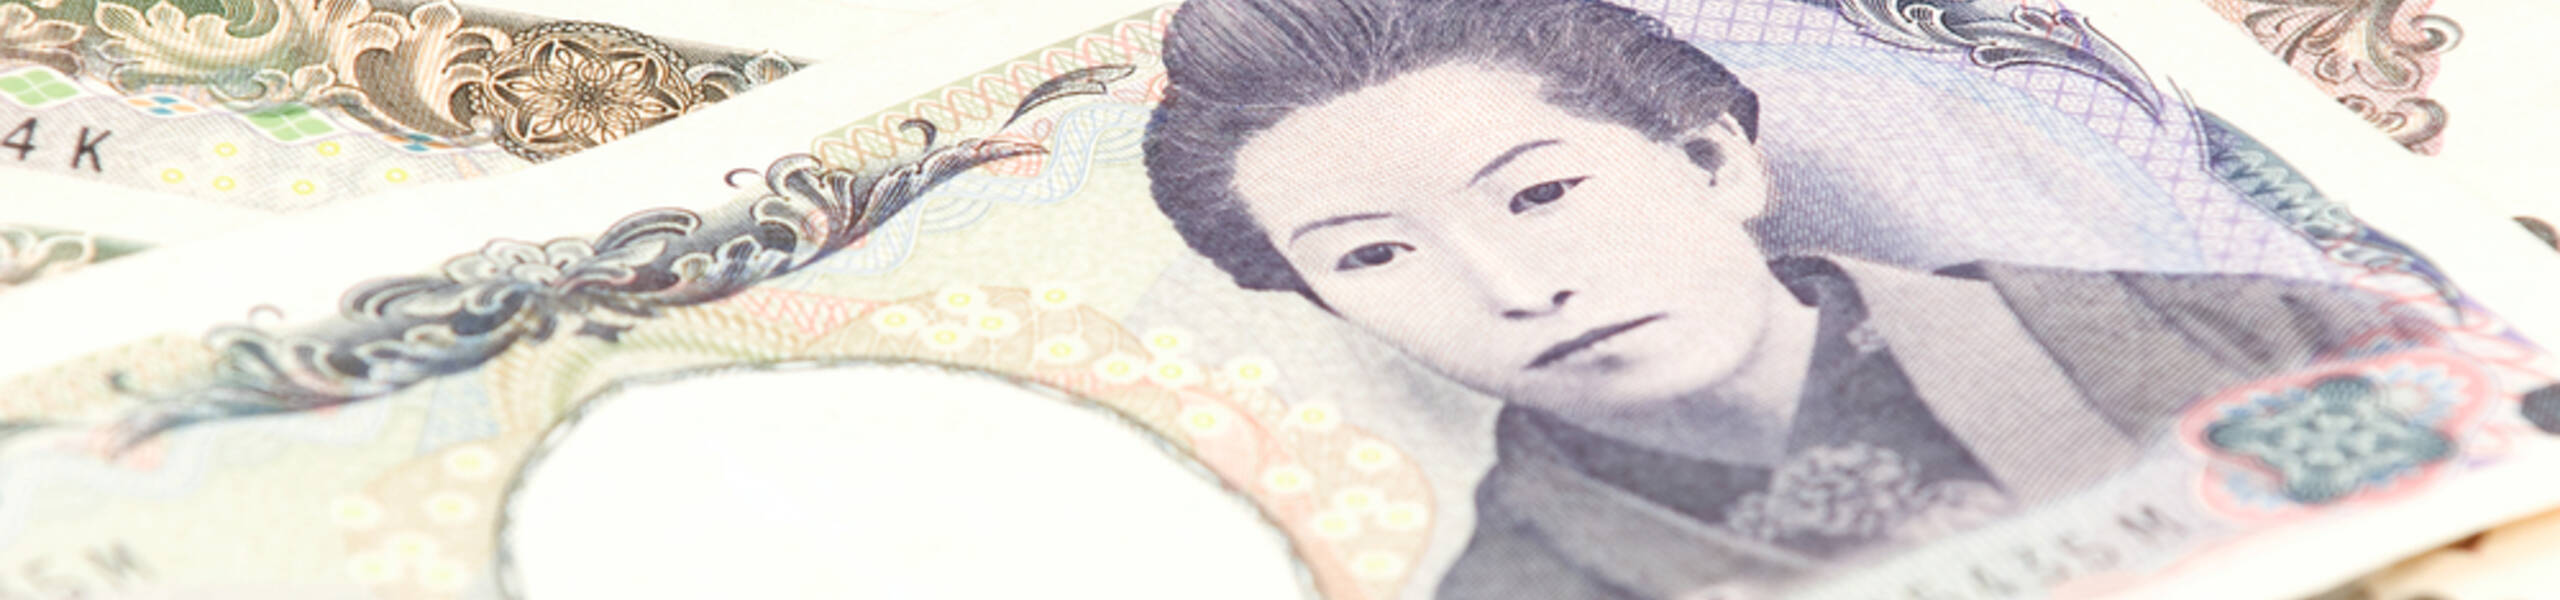 Mundurnya Suga Dapat Membuat Yen Jepang Melemah Kedepannya